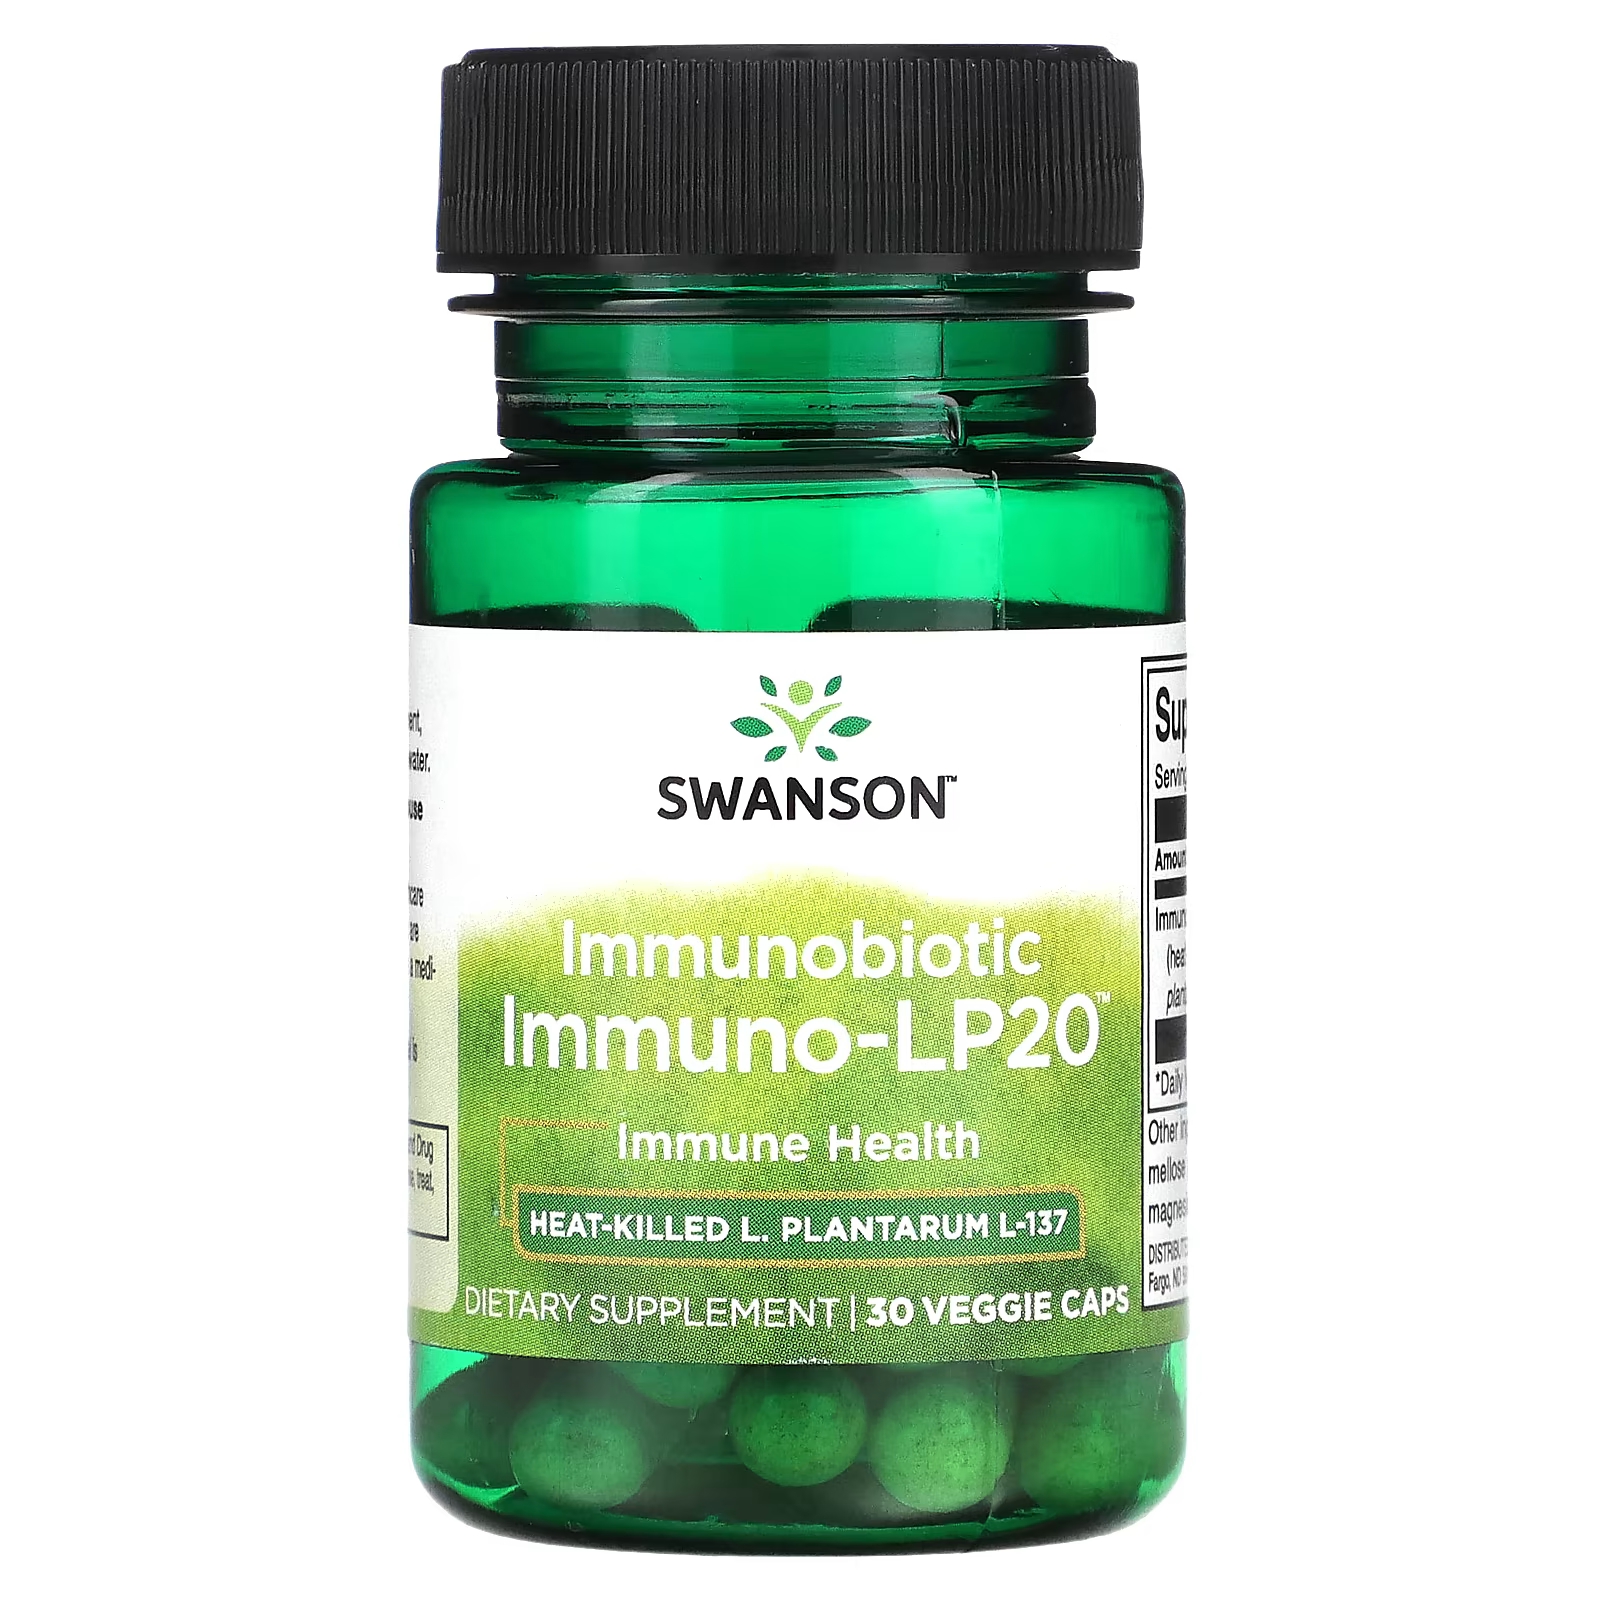 Пищевая добавка Swanson Immunobiotic Immuno-LP20, 30 растительных капсул пищевая добавка swanson l plantarum probiotic 30 капсул